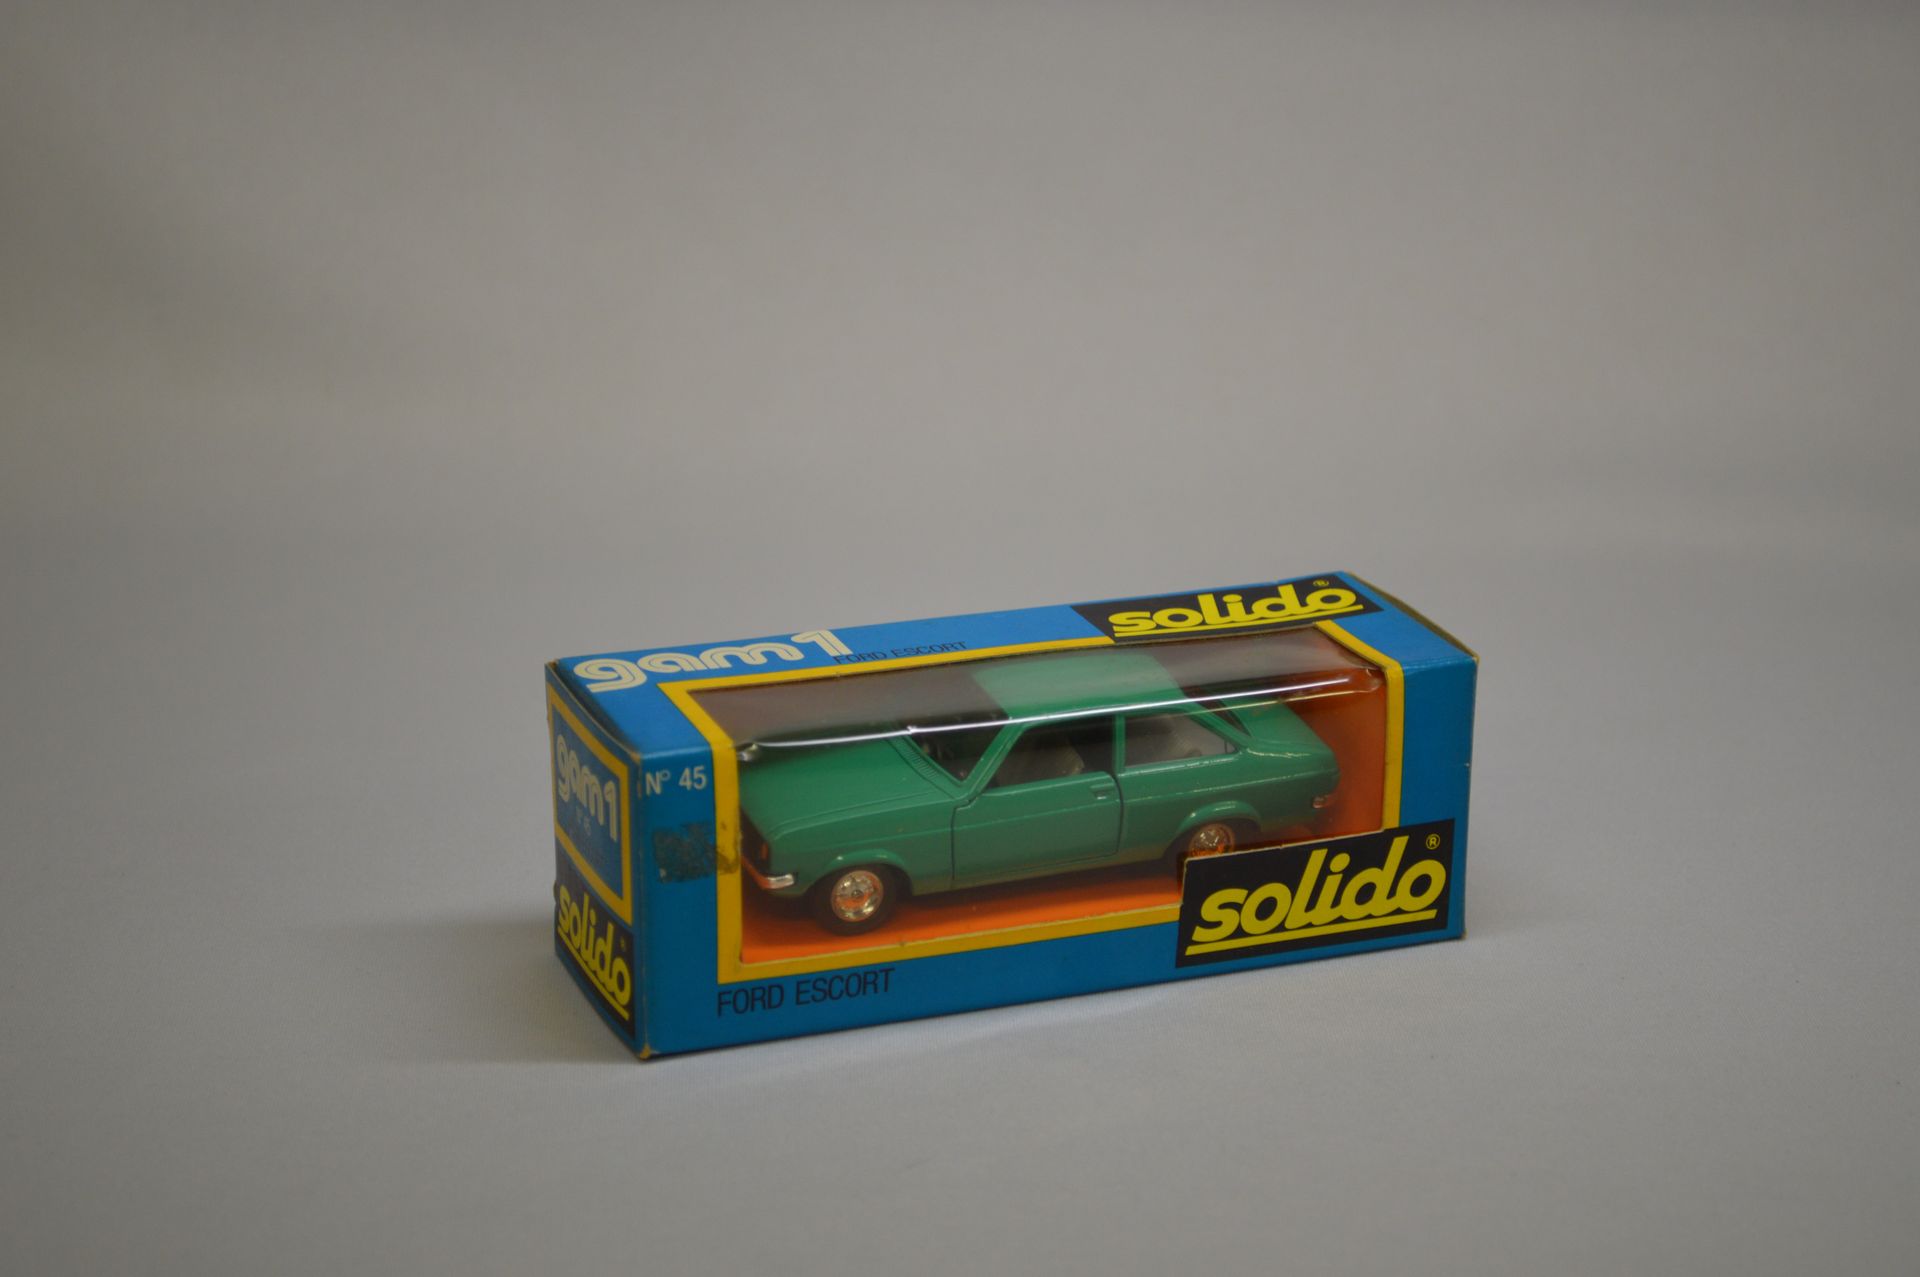 Null SOLIDO - GAM 1 - Coche de turismo : Ford Escort, n° 45, verde.

Caja origin&hellip;